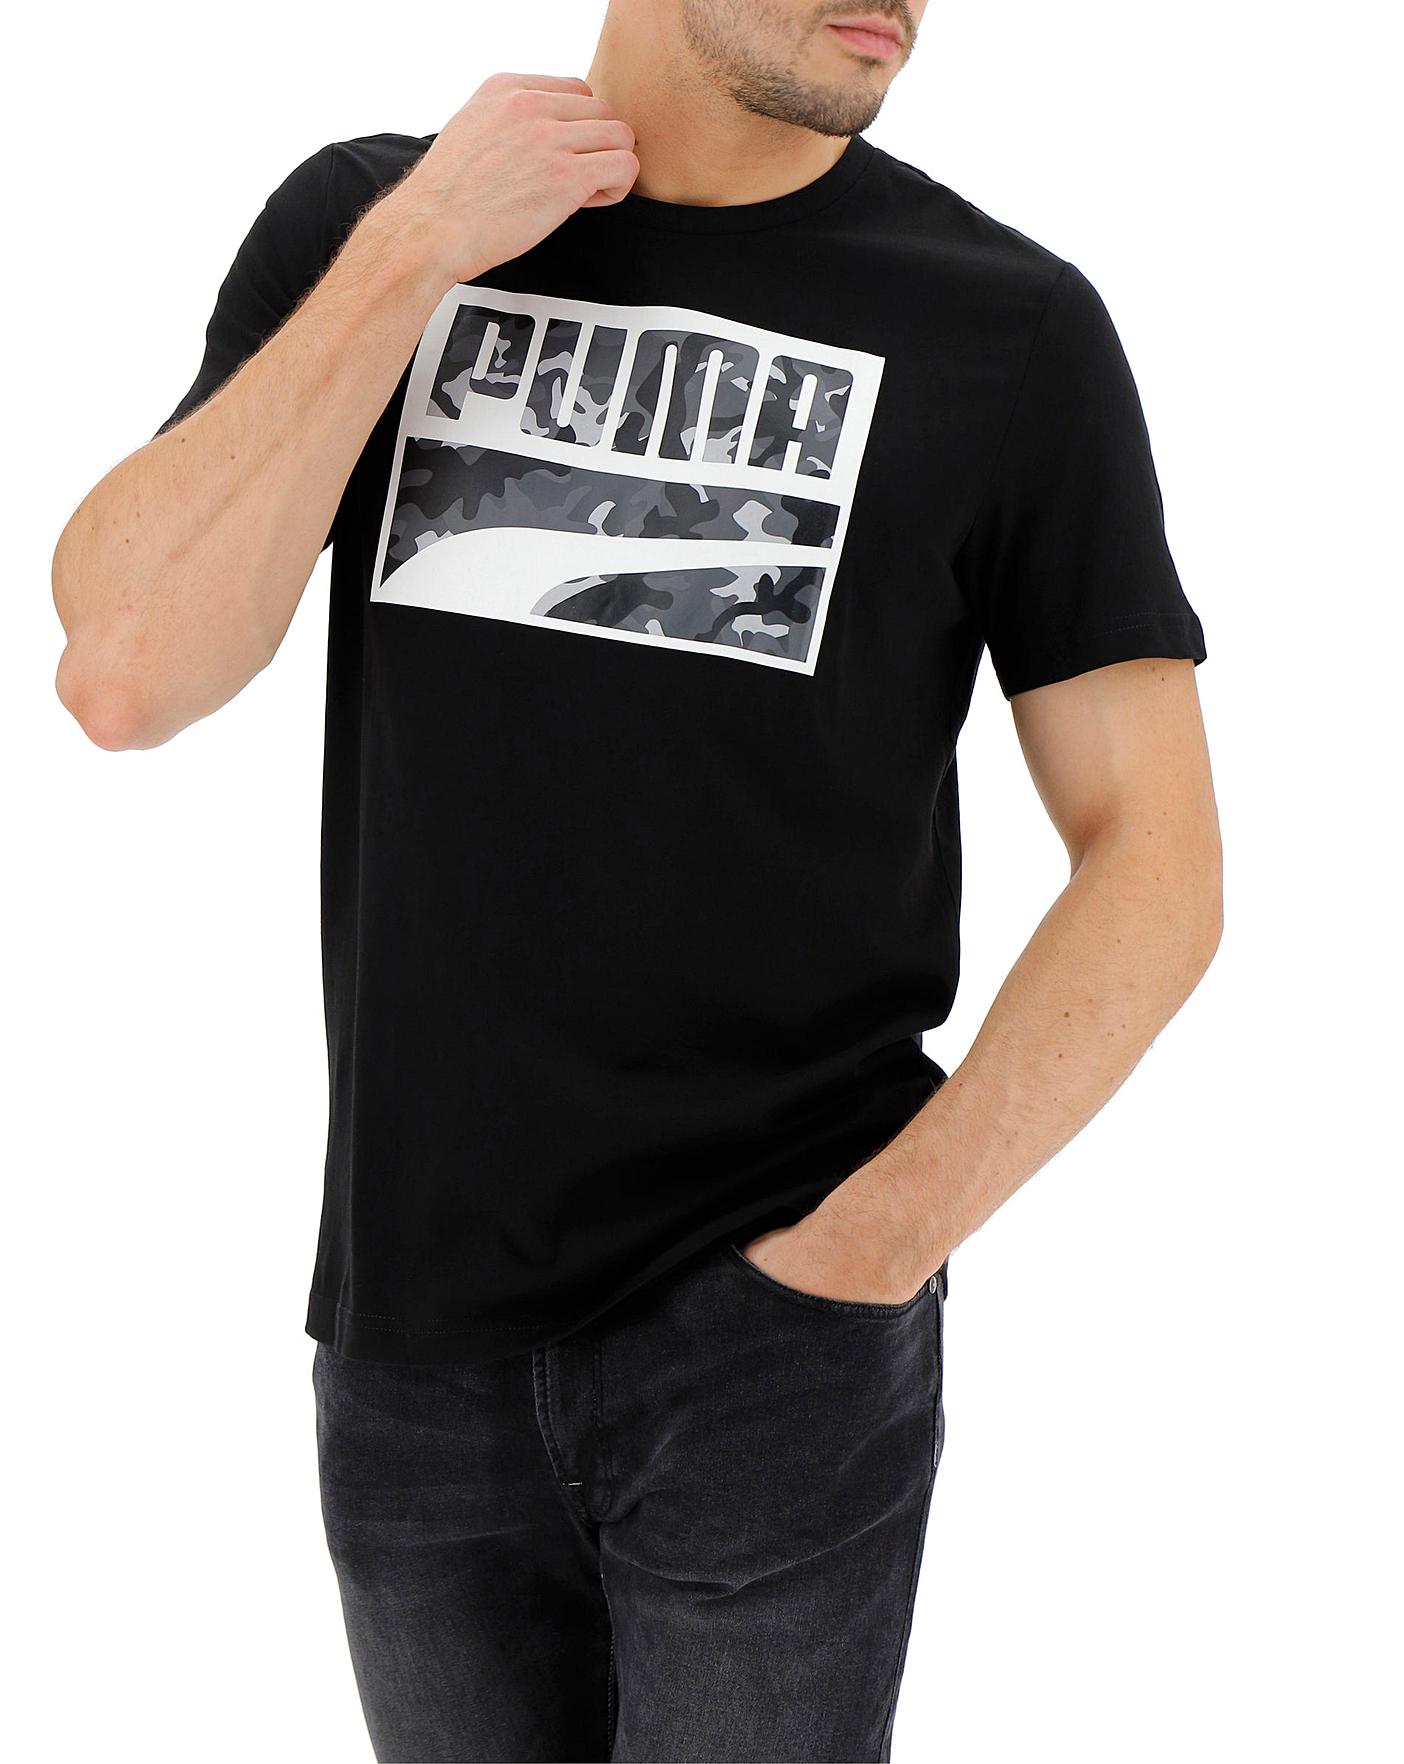 puma logo t shirt